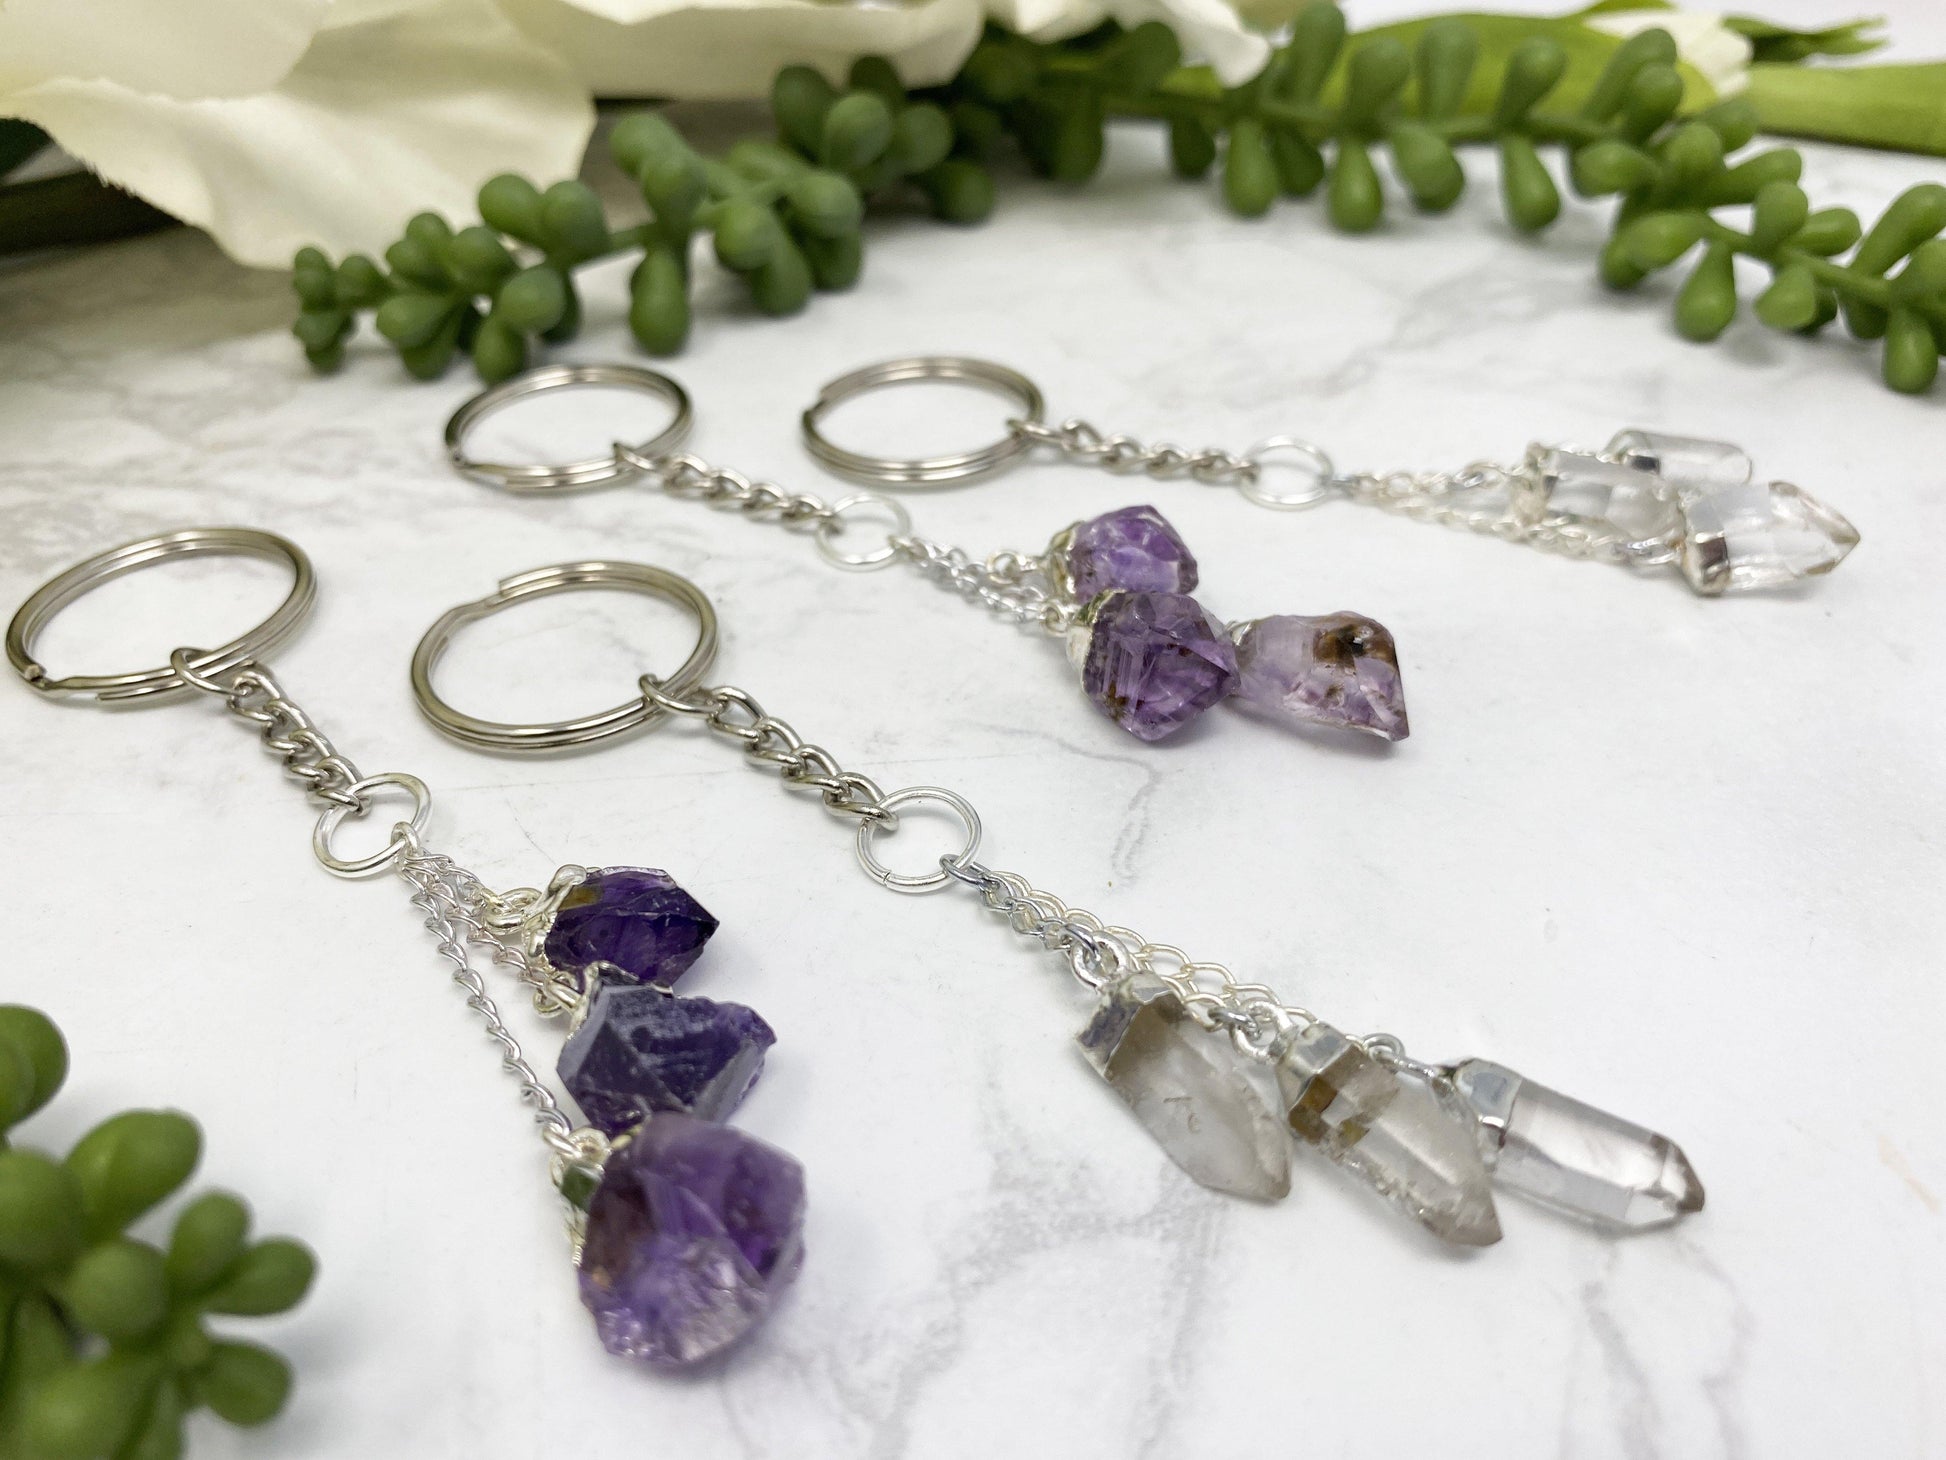 Clear quartz and amethyst crystal keychains.